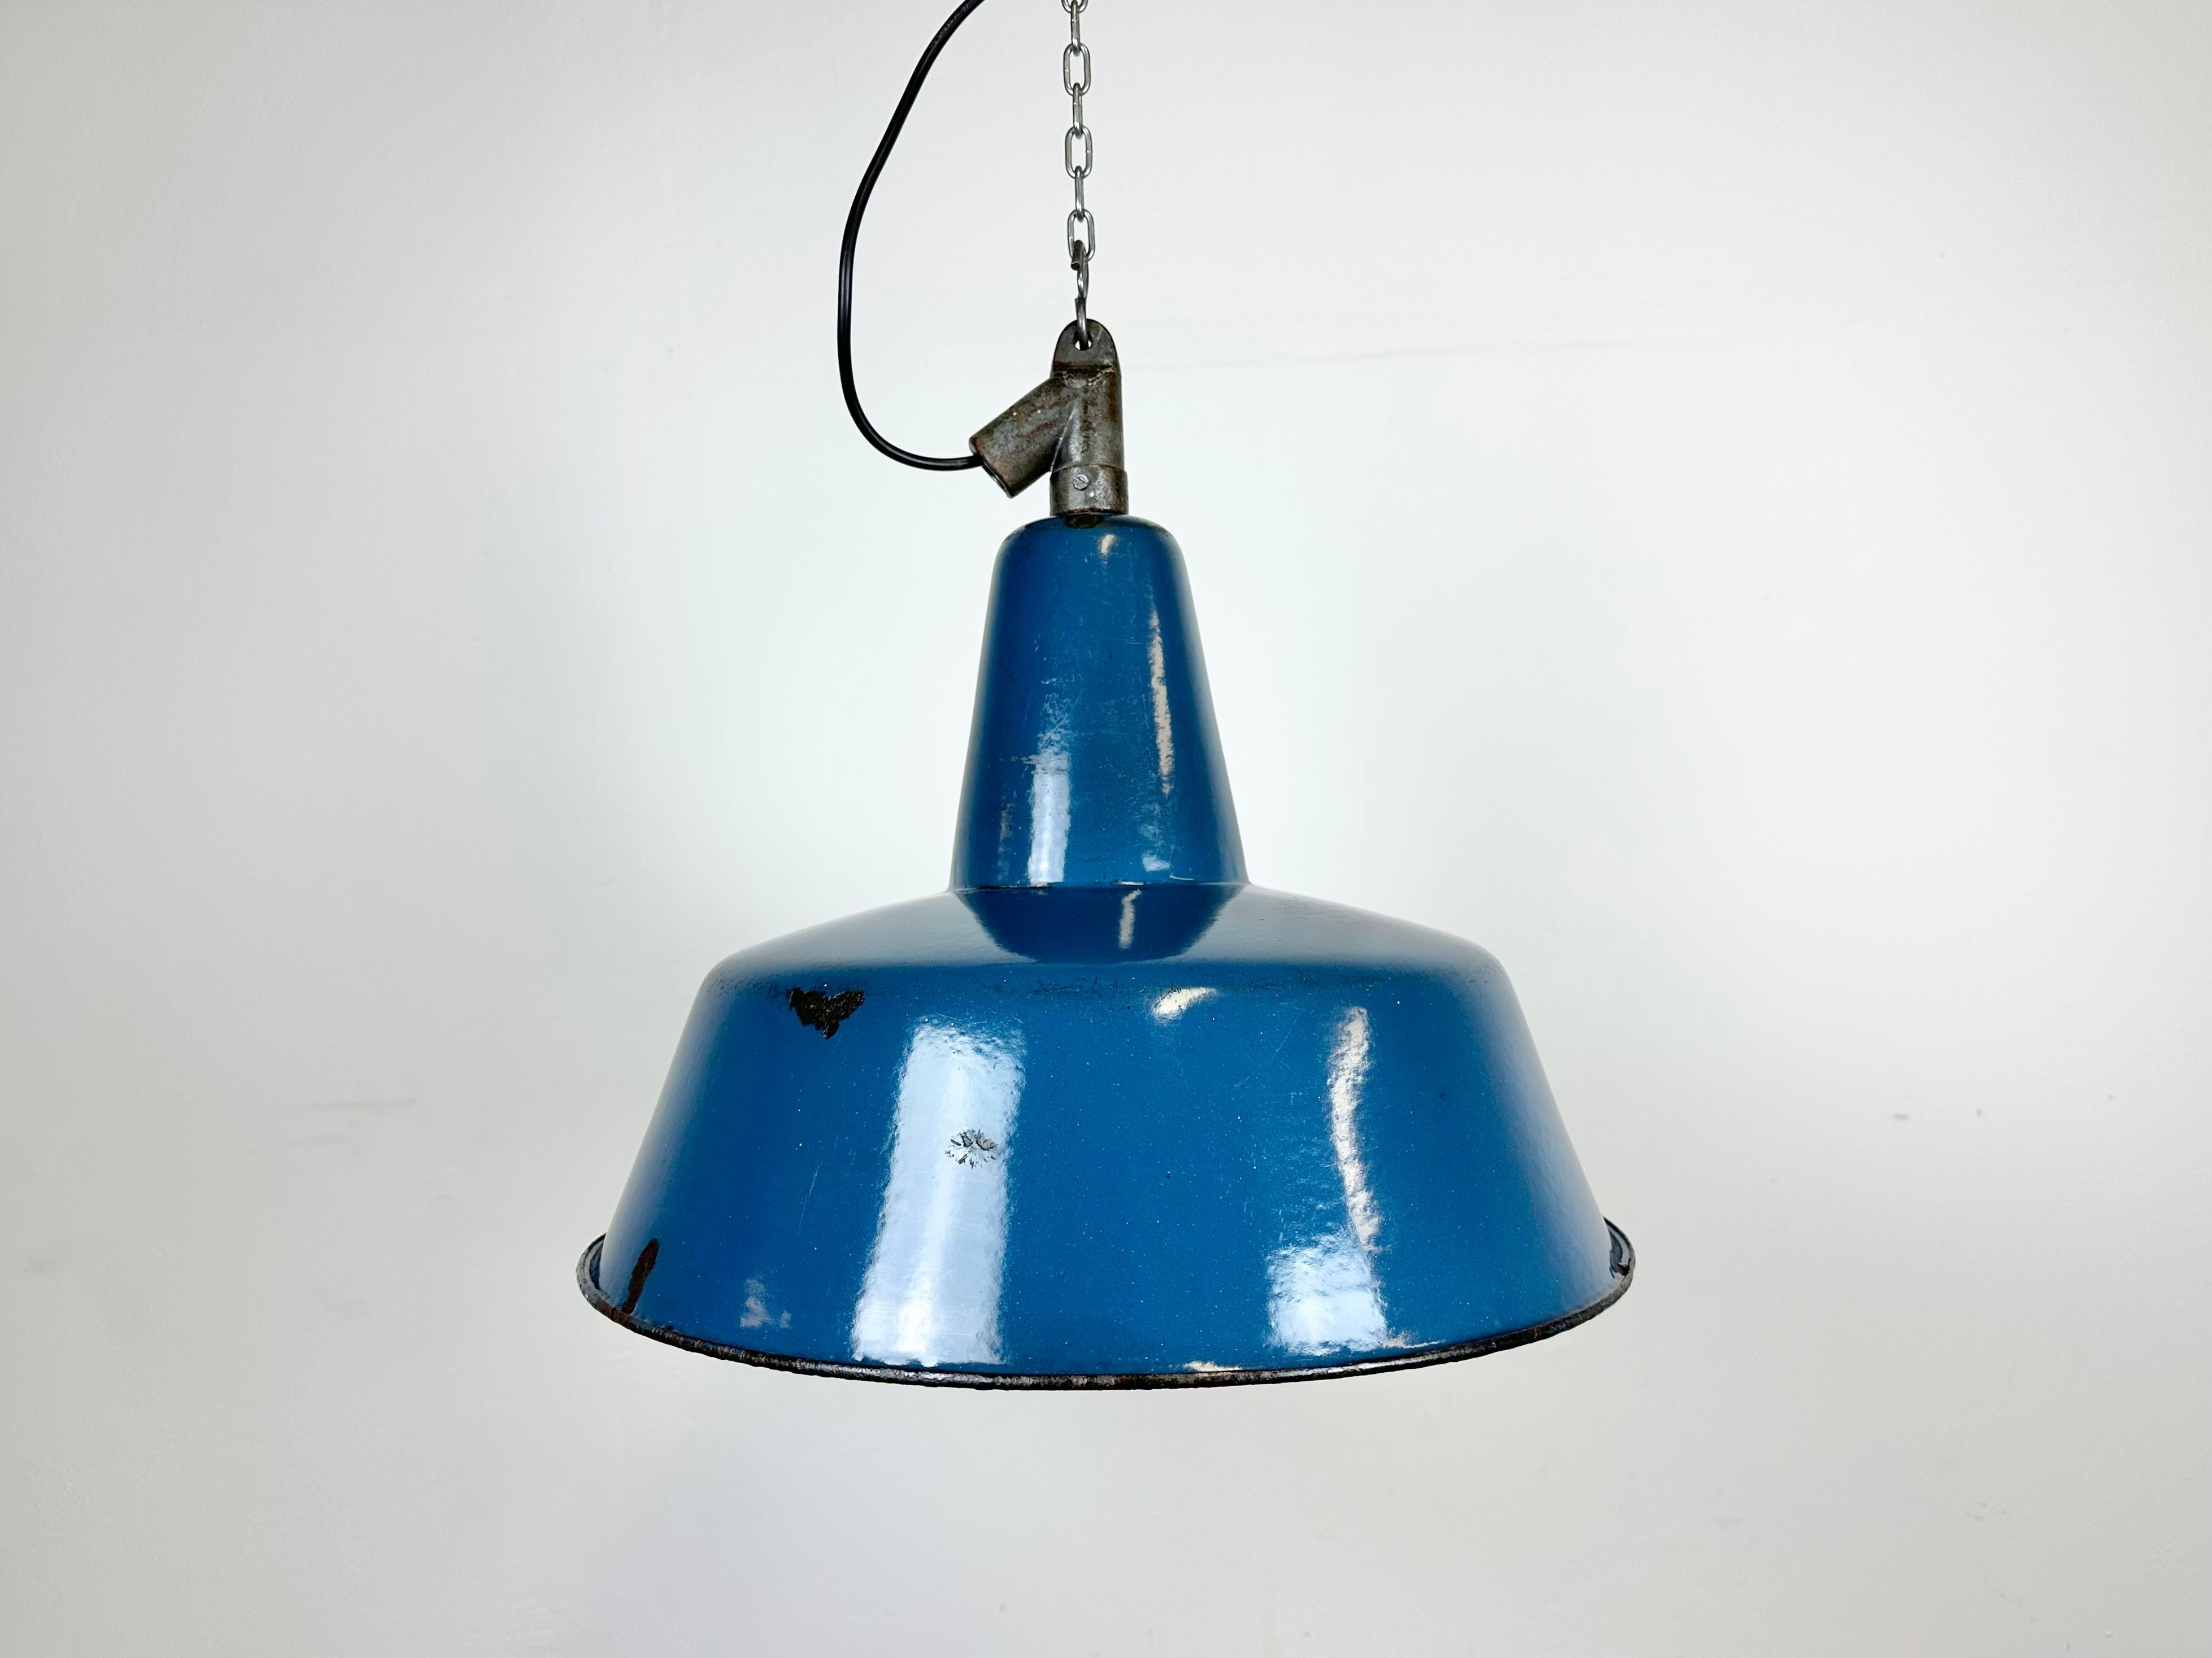 Industrielle blaue Emaille-Pendelleuchte, hergestellt in Polen in den 1960er Jahren. Weiße Emaille im Inneren des Schirms. Platte aus Gusseisen. Für die Porzellanfassung werden E 27/E 26-Glühbirnen benötigt. Neues Kabel. Das Gewicht der Leuchte